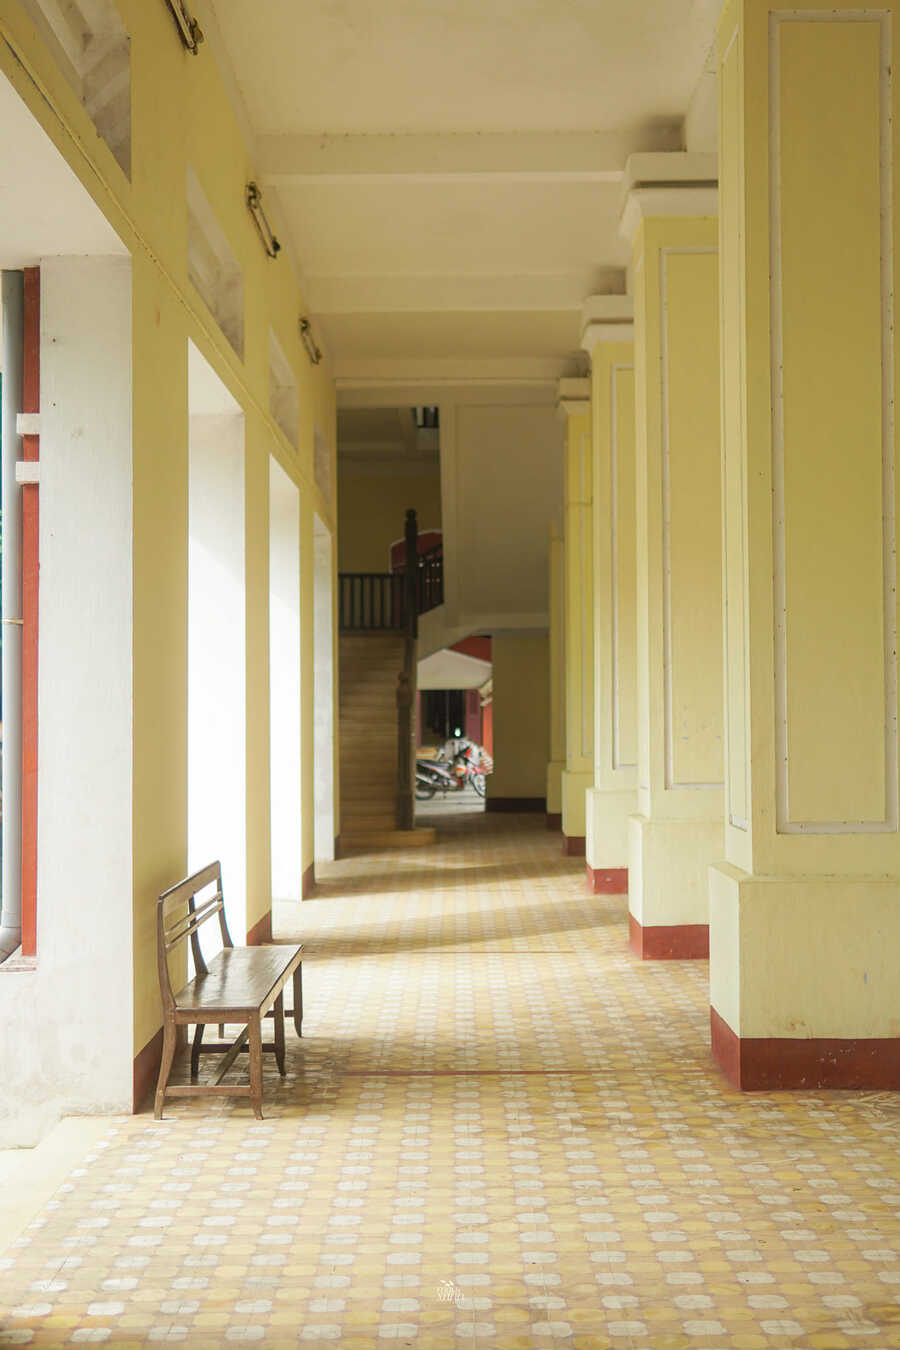 Trường Quốc học Huế, không gian cổ kính tĩnh lặng giữa vùng kinh kỳ 3